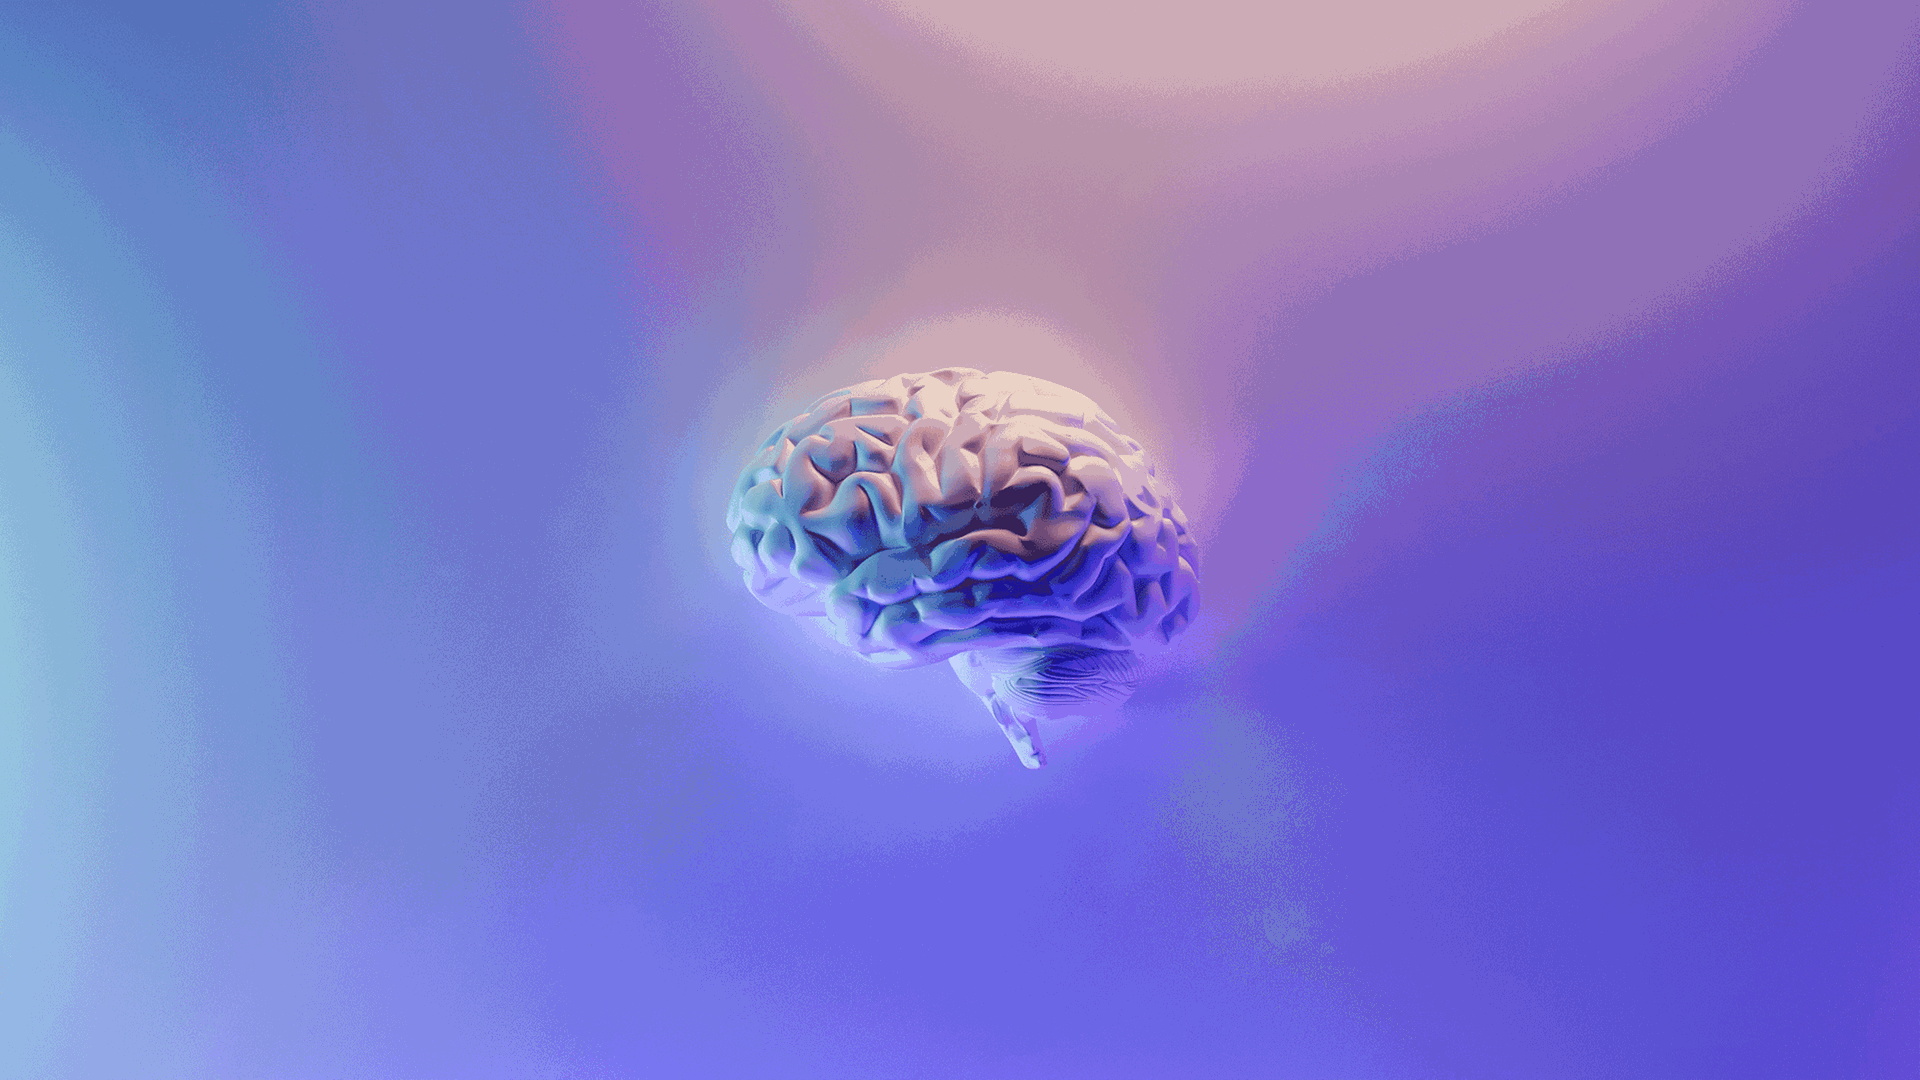 Führen bestimmte Einflüsse dazu, dass wir uns an etwas ganz Falsches erinnern? Zu sehen: Grafik eines Gehirns auf lilafarbigem Hintergrund. 